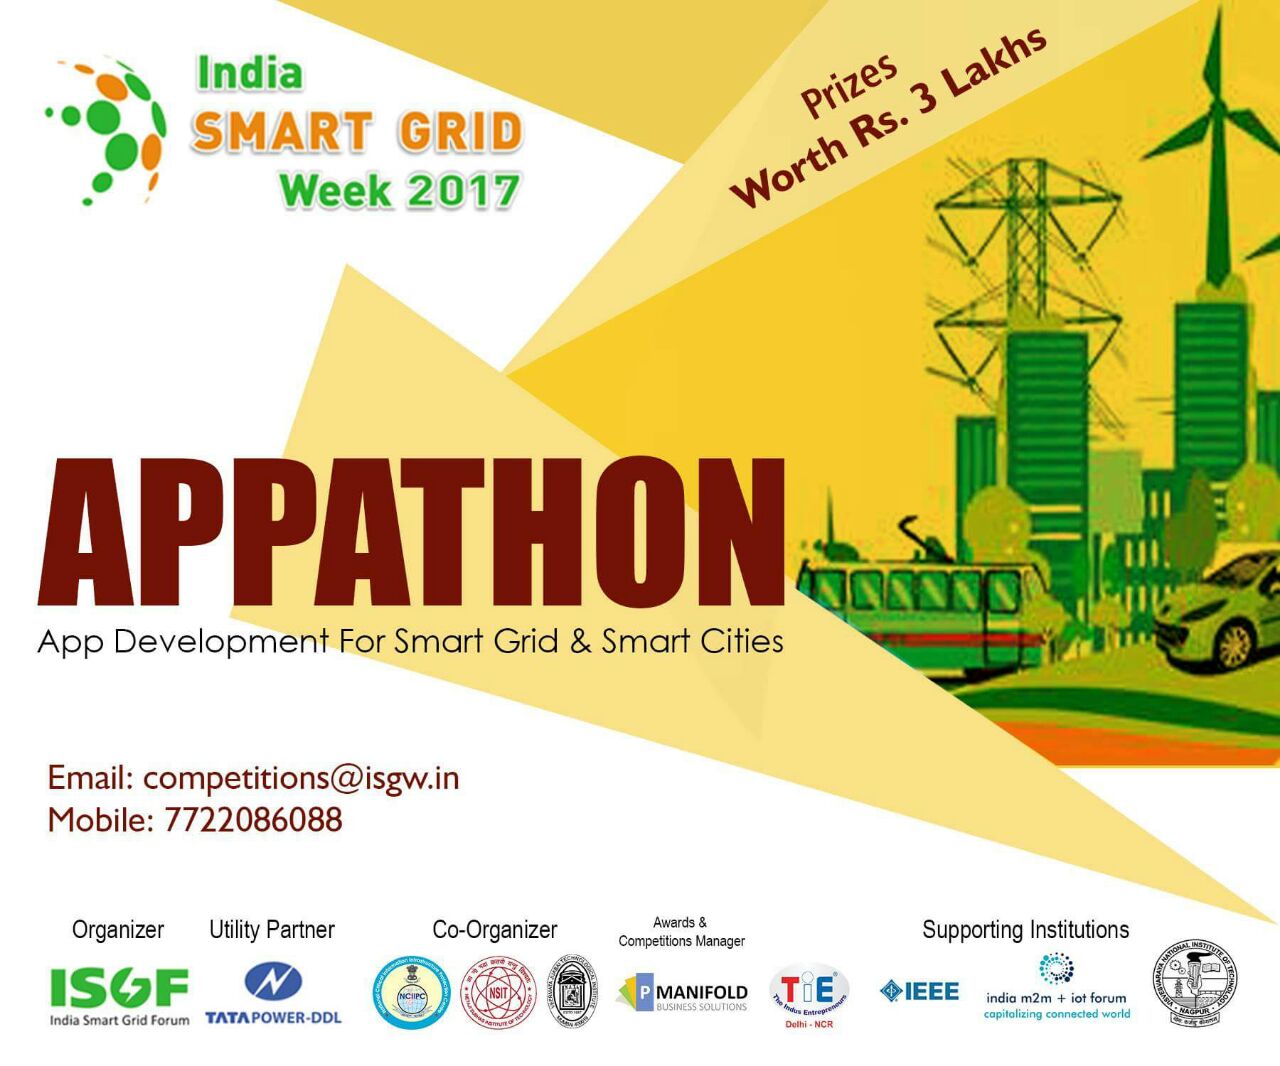 India Smart Grid Week 2017 APPATHON, New Delhi, Delhi, India